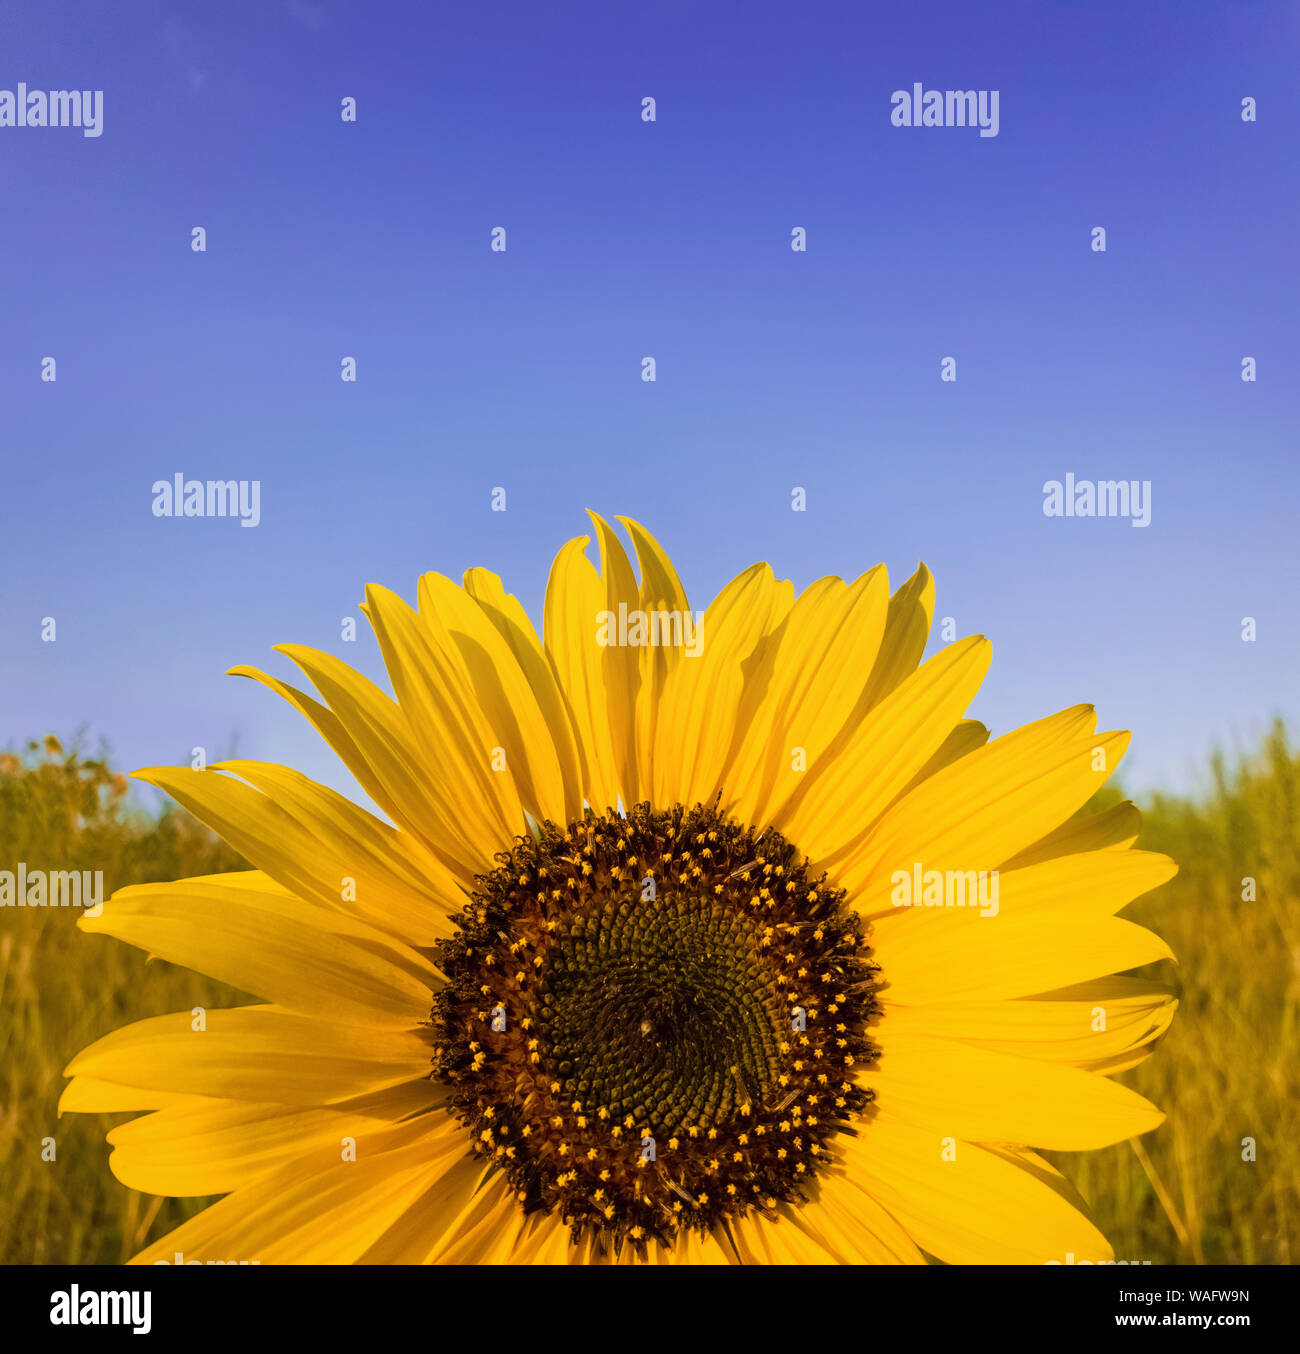 In der Nähe von Sunflower Pflanze, die im Bereich über dem klaren, blauen Himmel Hintergrund an einem sonnigen Herbsttag. Organische und natürliche Gelbe Blütenblätter Textur Stockfoto